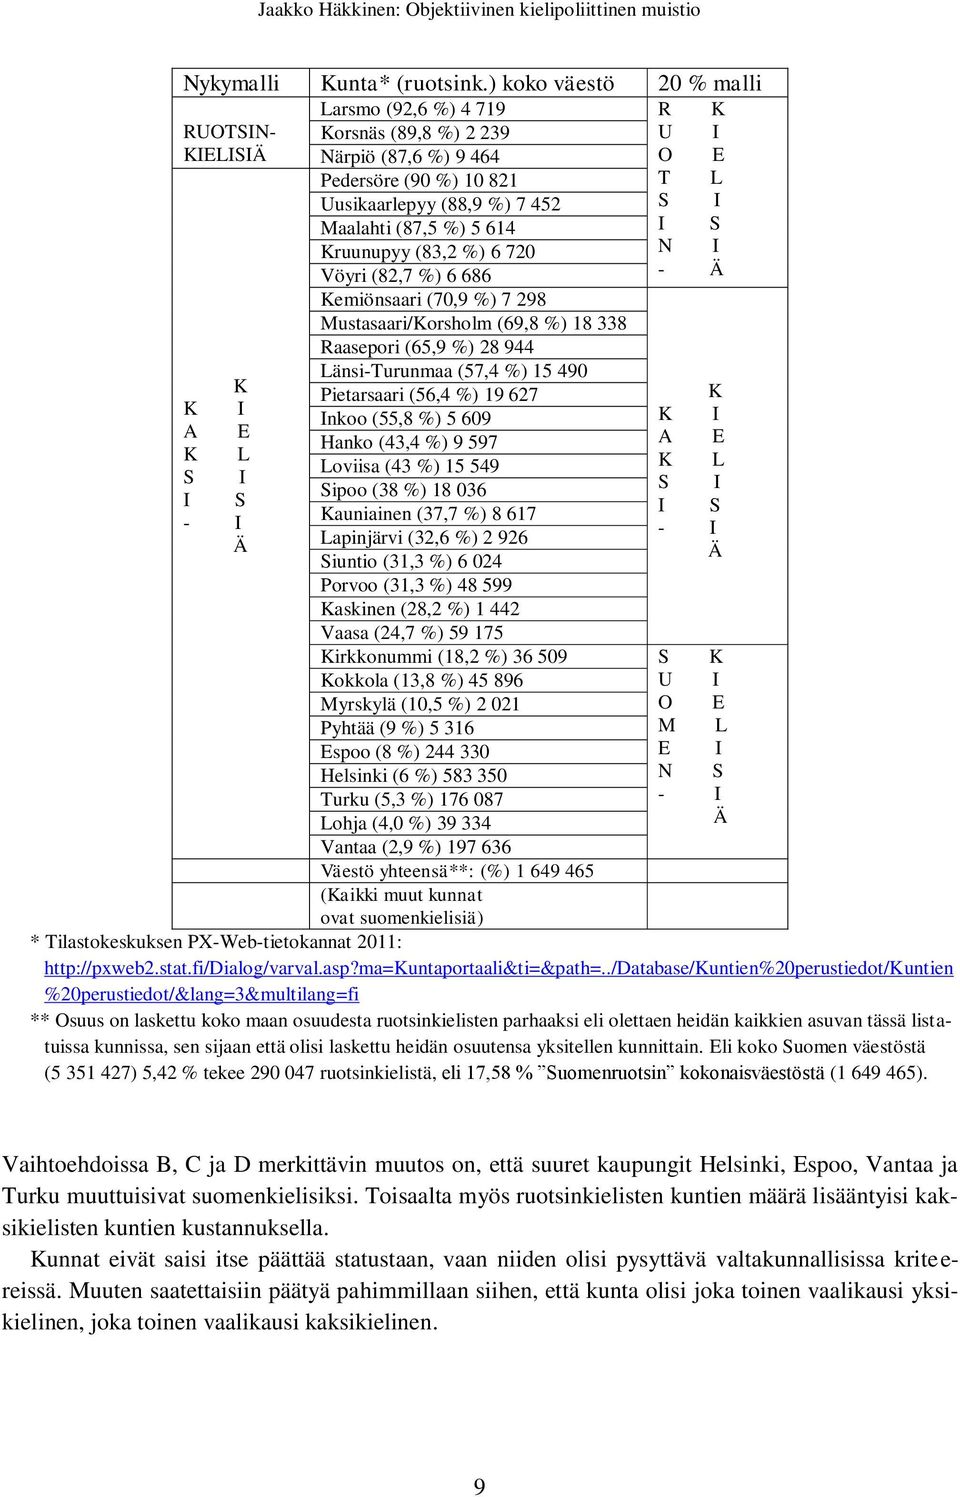 %) 5 614 I S Kruunupyy (83,2 %) 6 720 N I Vöyri (82,7 %) 6 686 - Ä Kemiönsaari (70,9 %) 7 298 Mustasaari/Korsholm (69,8 %) 18 338 Raasepori (65,9 %) 28 944 Länsi-Turunmaa (57,4 %) 15 490 K